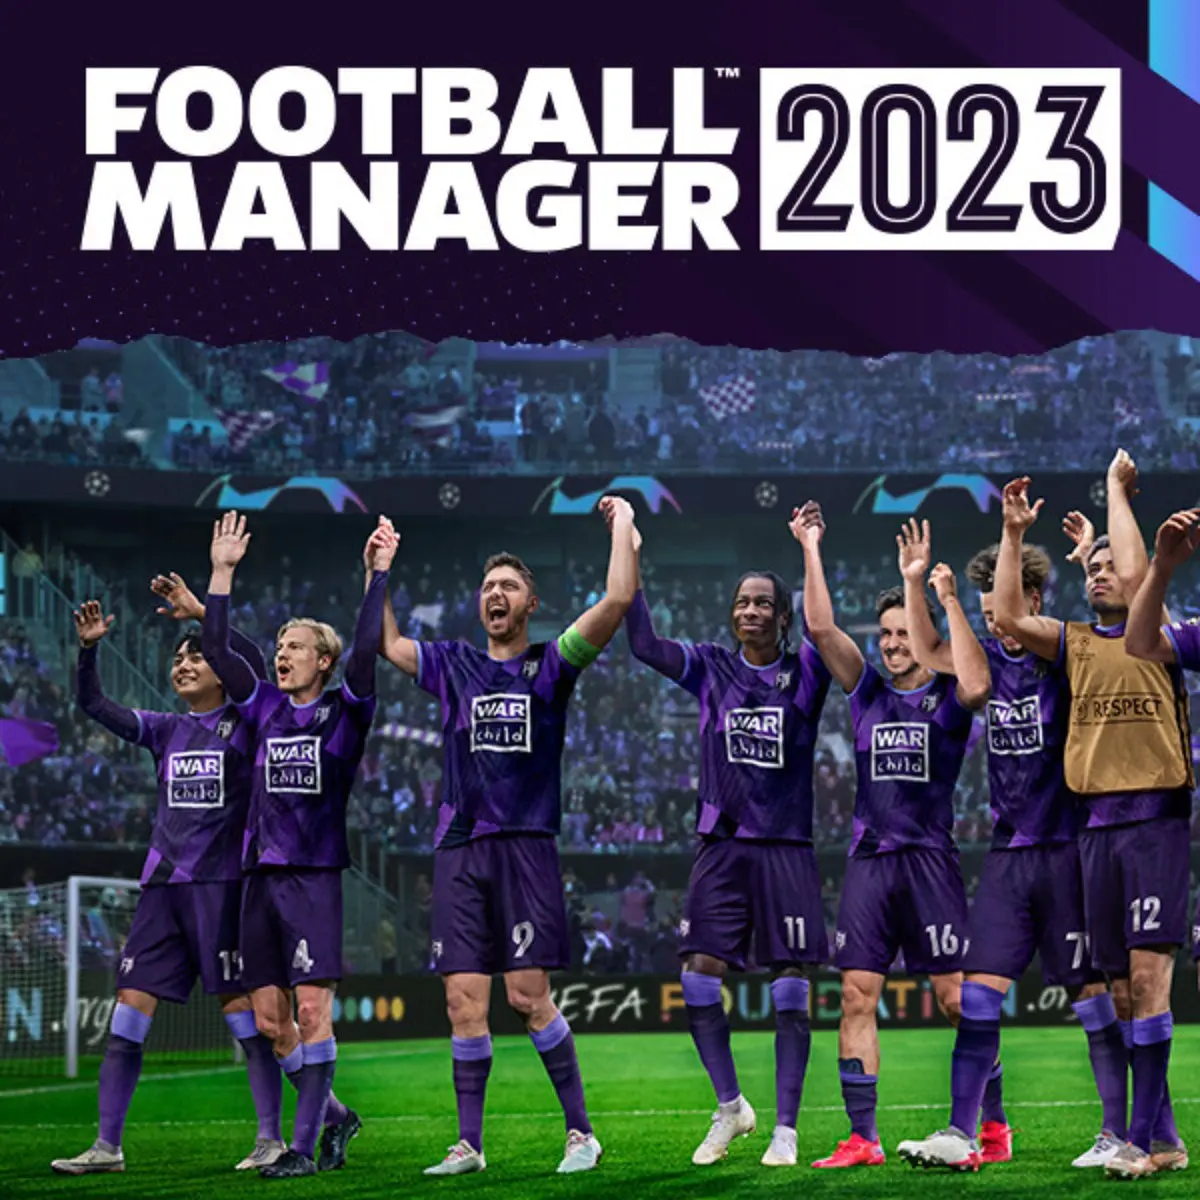 Baixar a última versão do Football Manager 2022 para PC grátis em